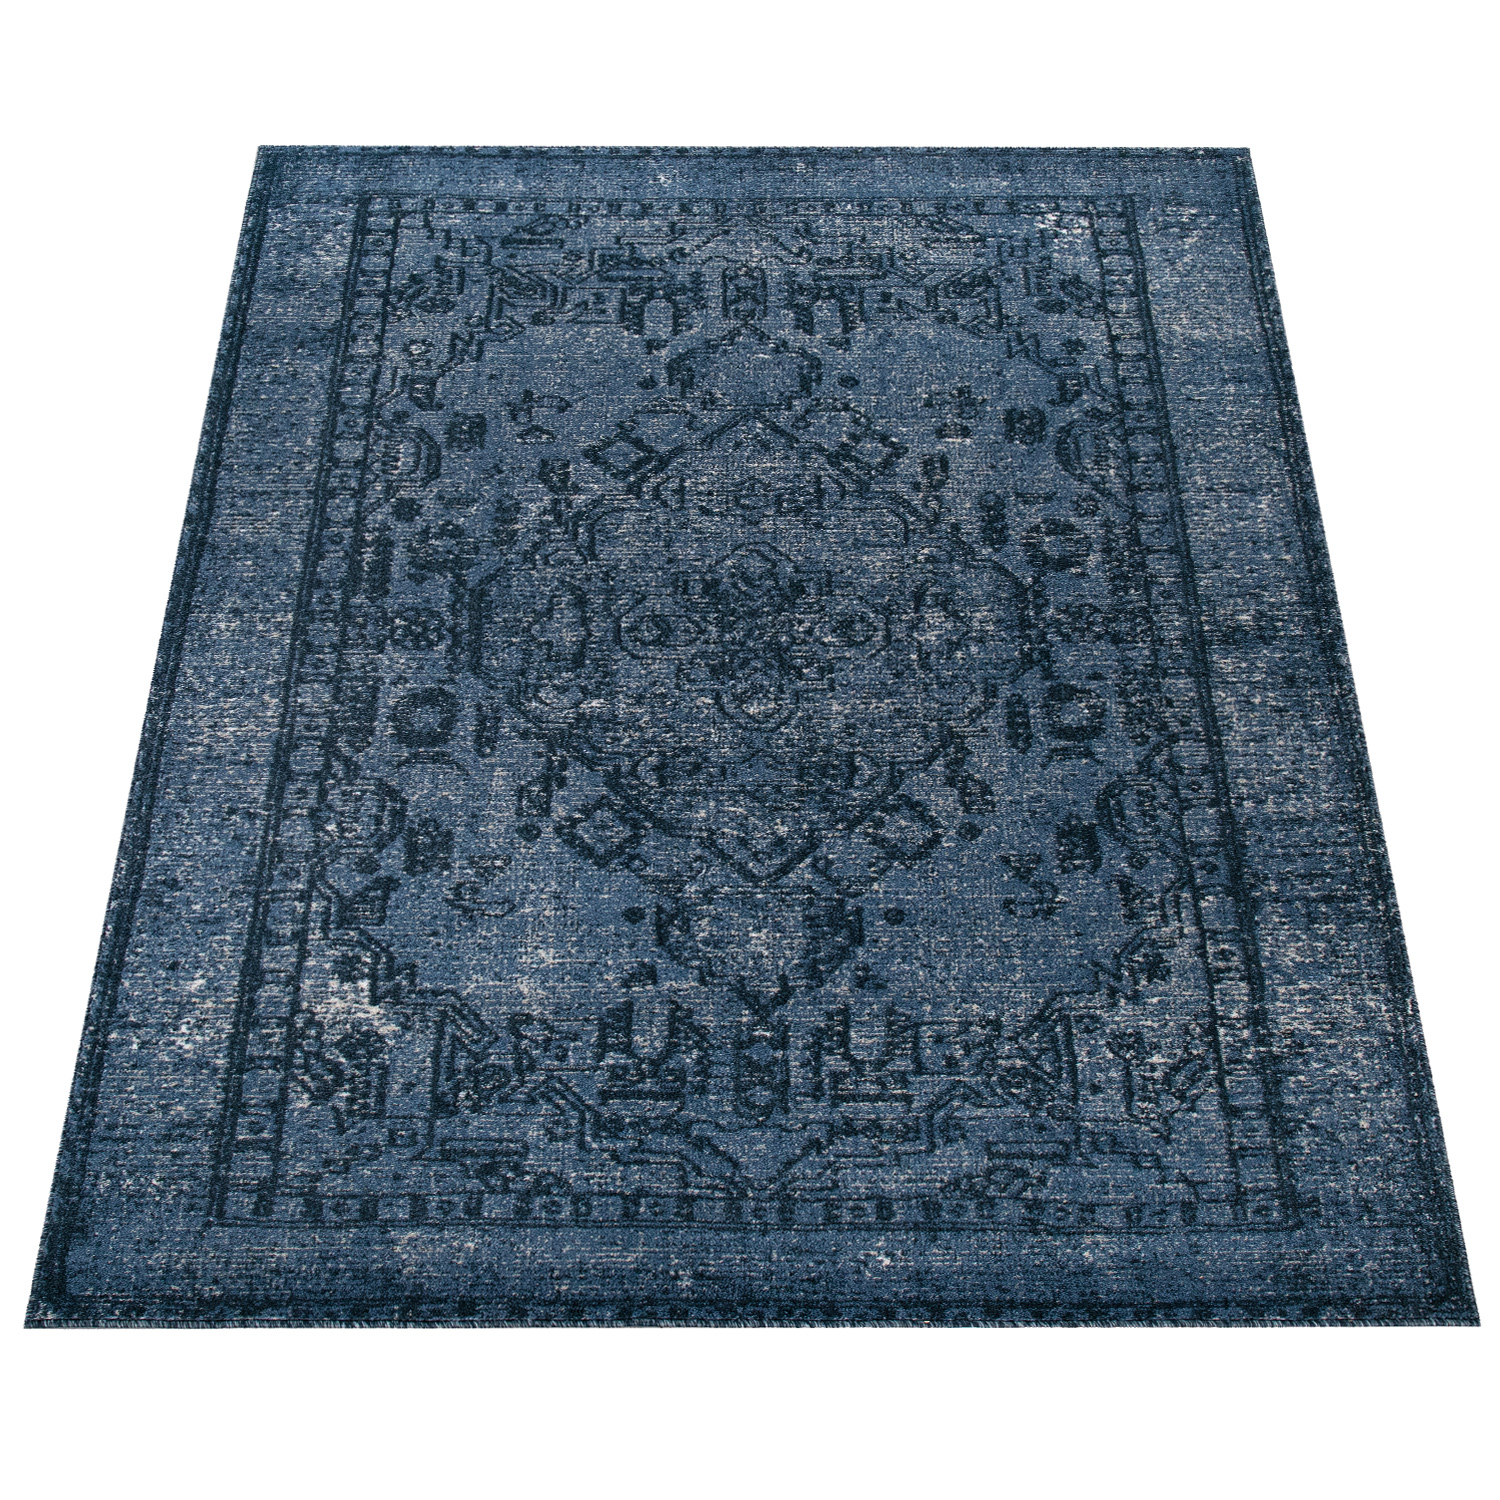 Teppich Wohnzimmer Boho Orientalisches Muster Blau 